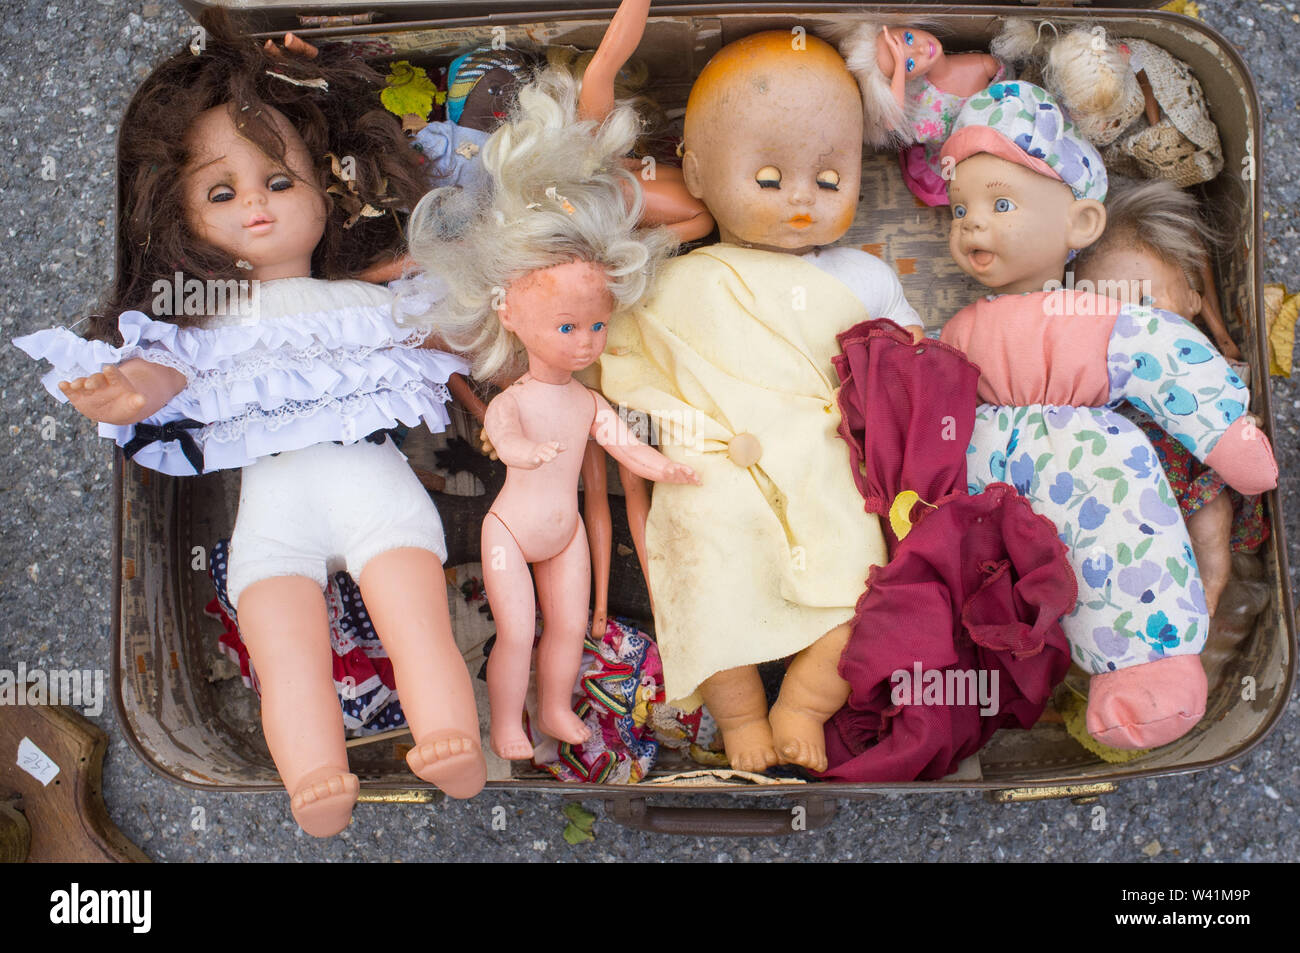 Bambole antiche immagini e fotografie stock ad alta risoluzione - Alamy